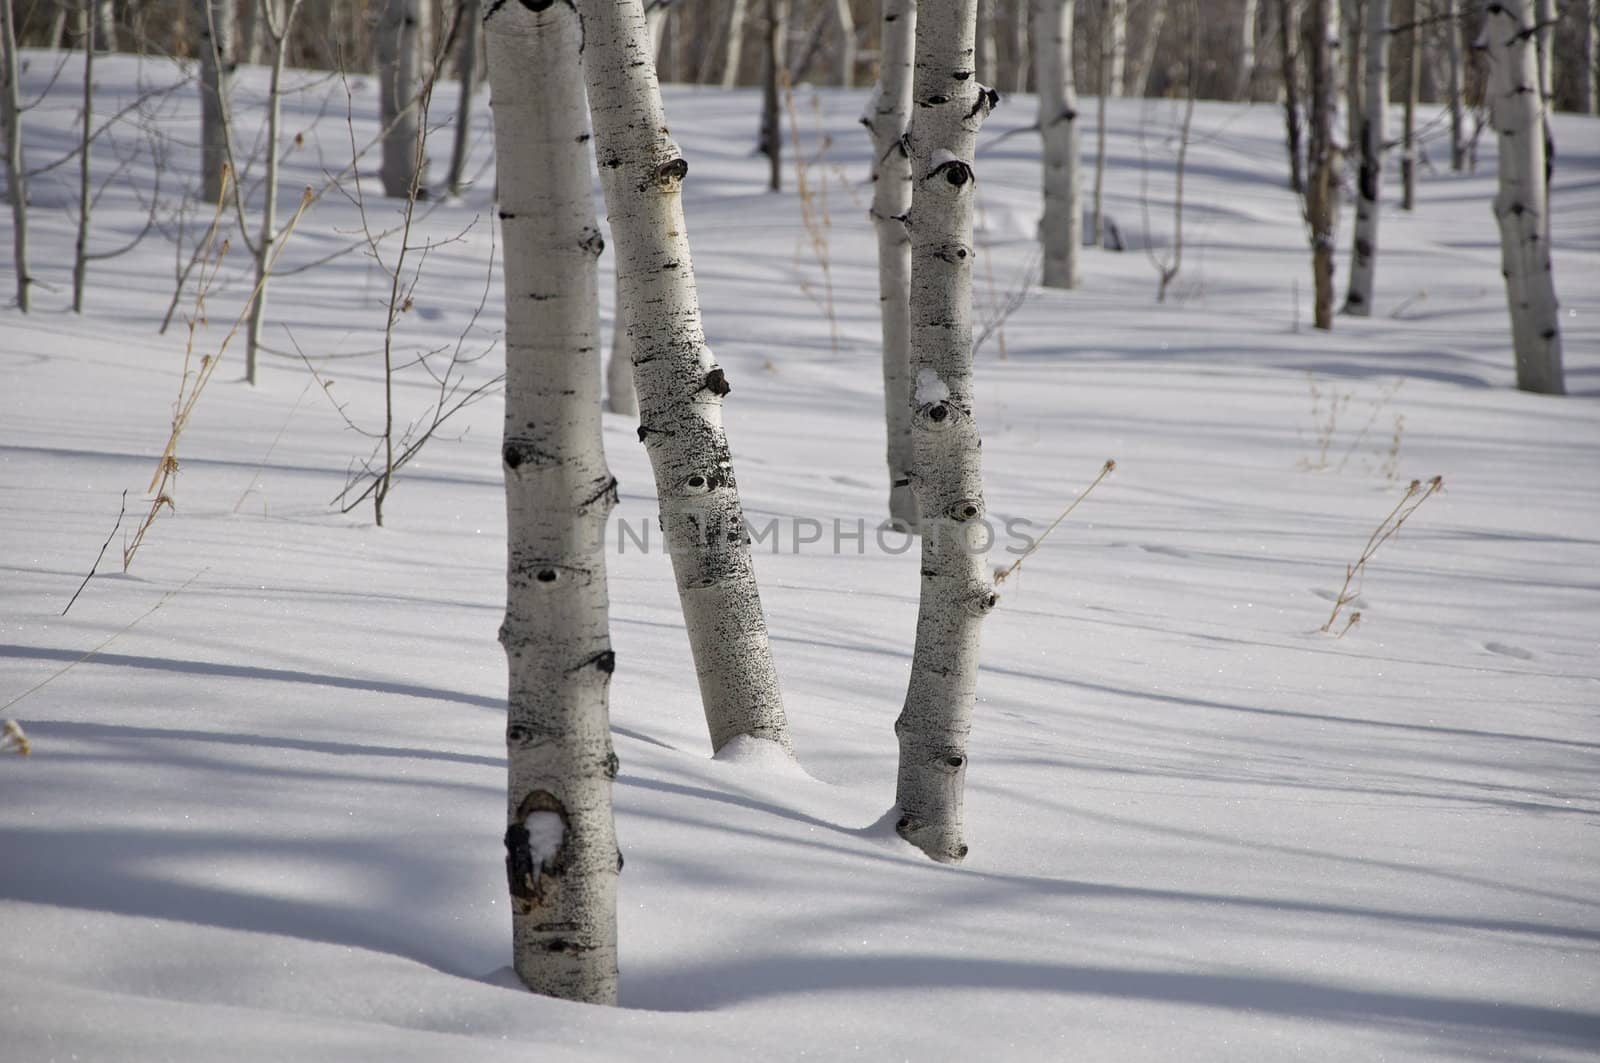 Winter - Aspens in Colorado by gilmourbto2001